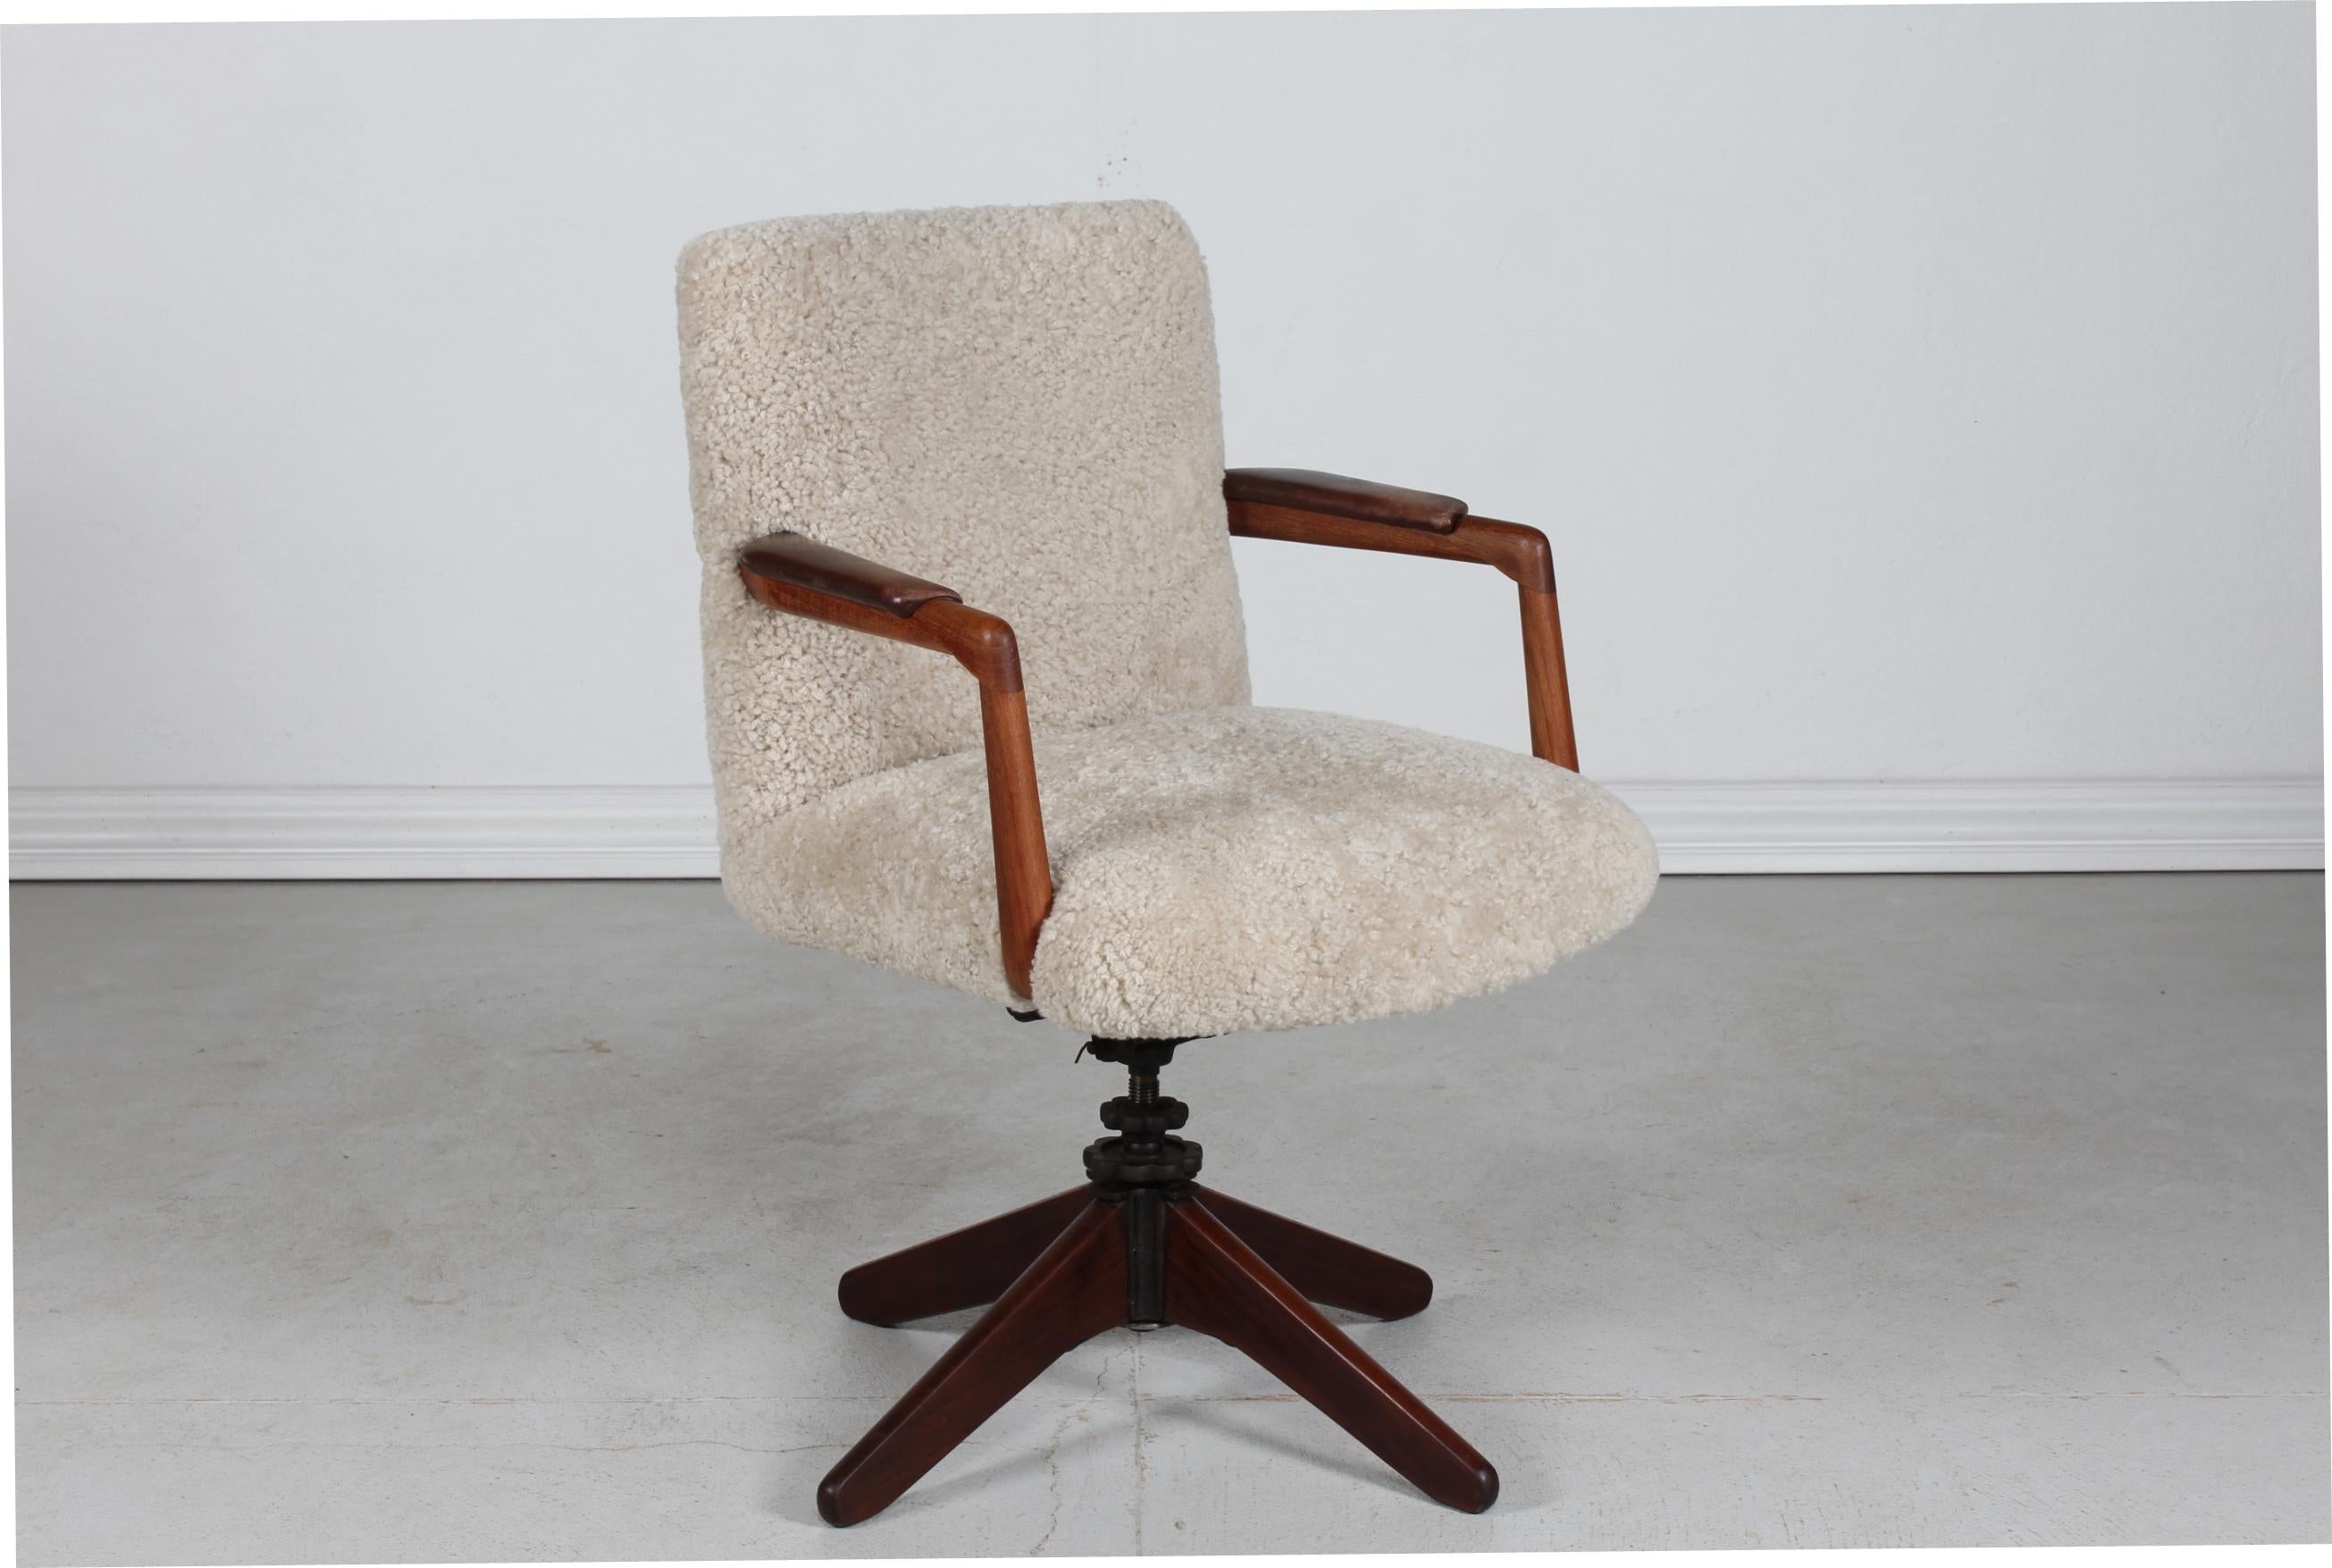 Hans J. Wegner Stil Vintage Dänischer Drehstuhl/Bürostuhl.
Die Armlehnen aus Teakholz sind mit dem Originalleder bezogen. 
Der Sitz und die Rückenlehne sind mit neuem Schaffell bezogen. 

Es ist möglich, den Winkel des Sitzes einzustellen - The